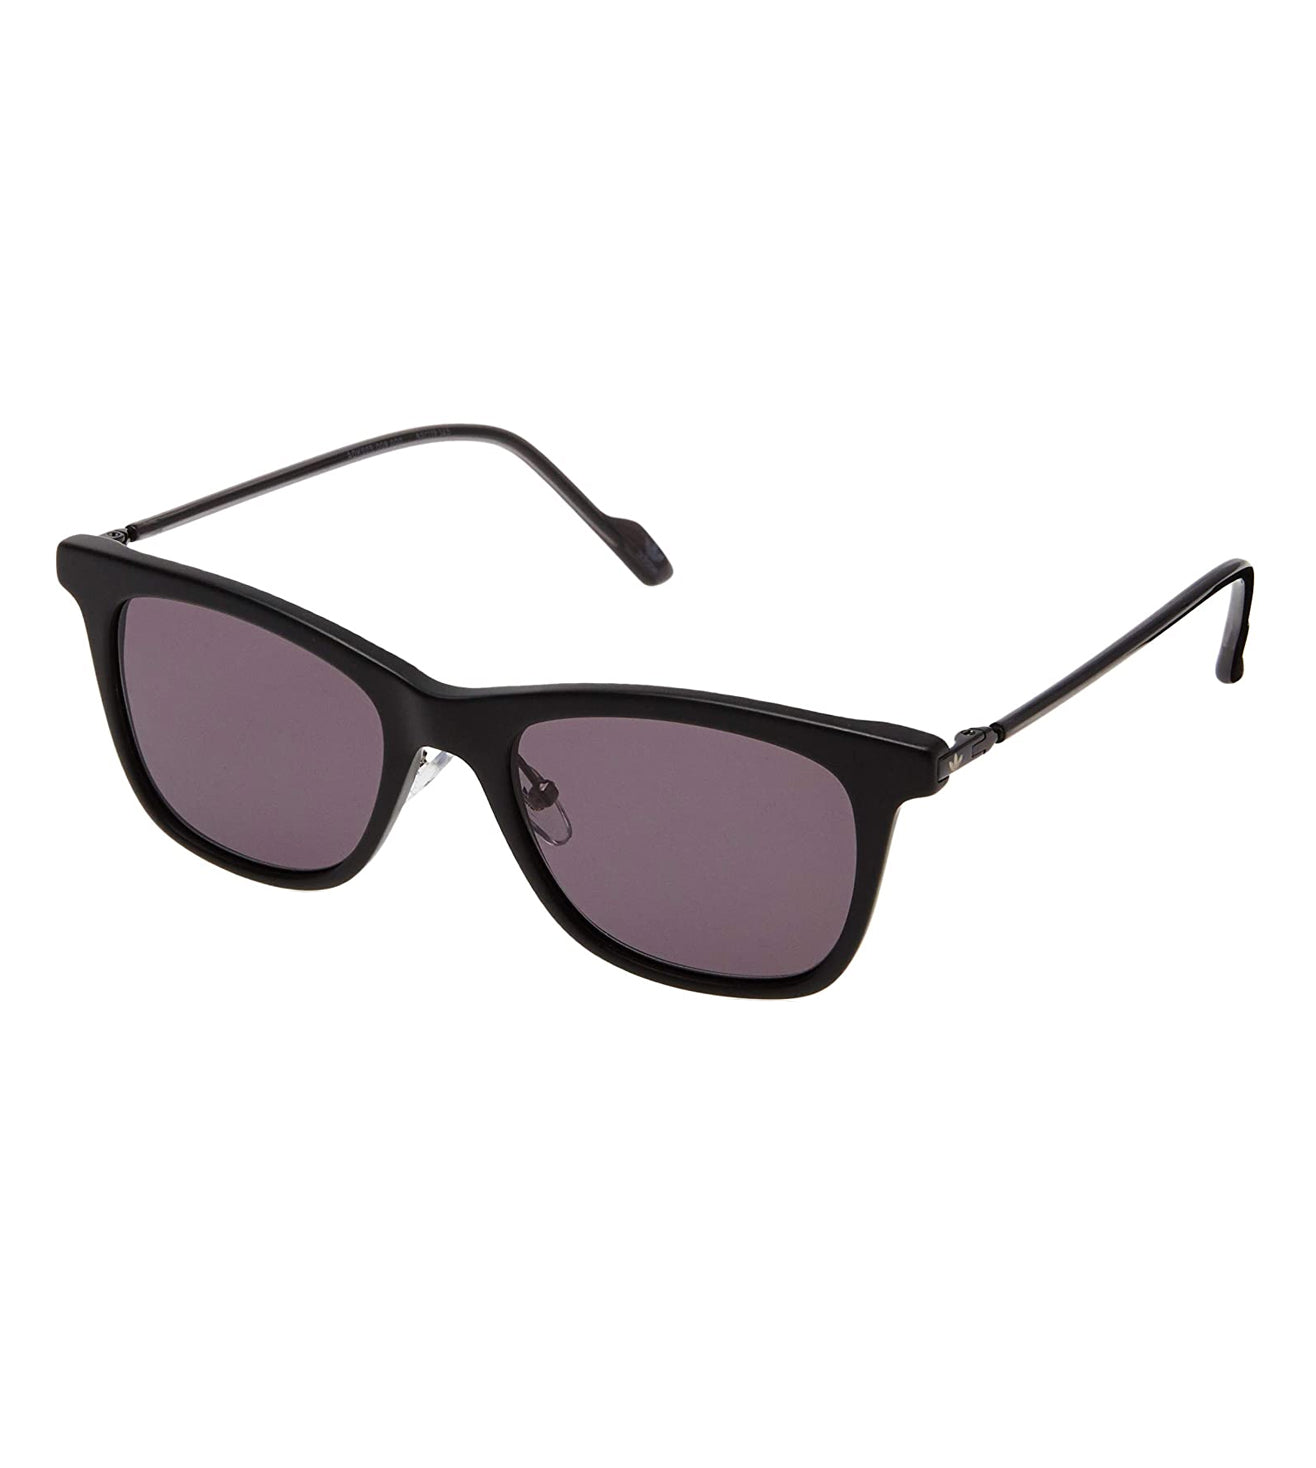 Adidas Originals Unisex Grey Square Sunglasses